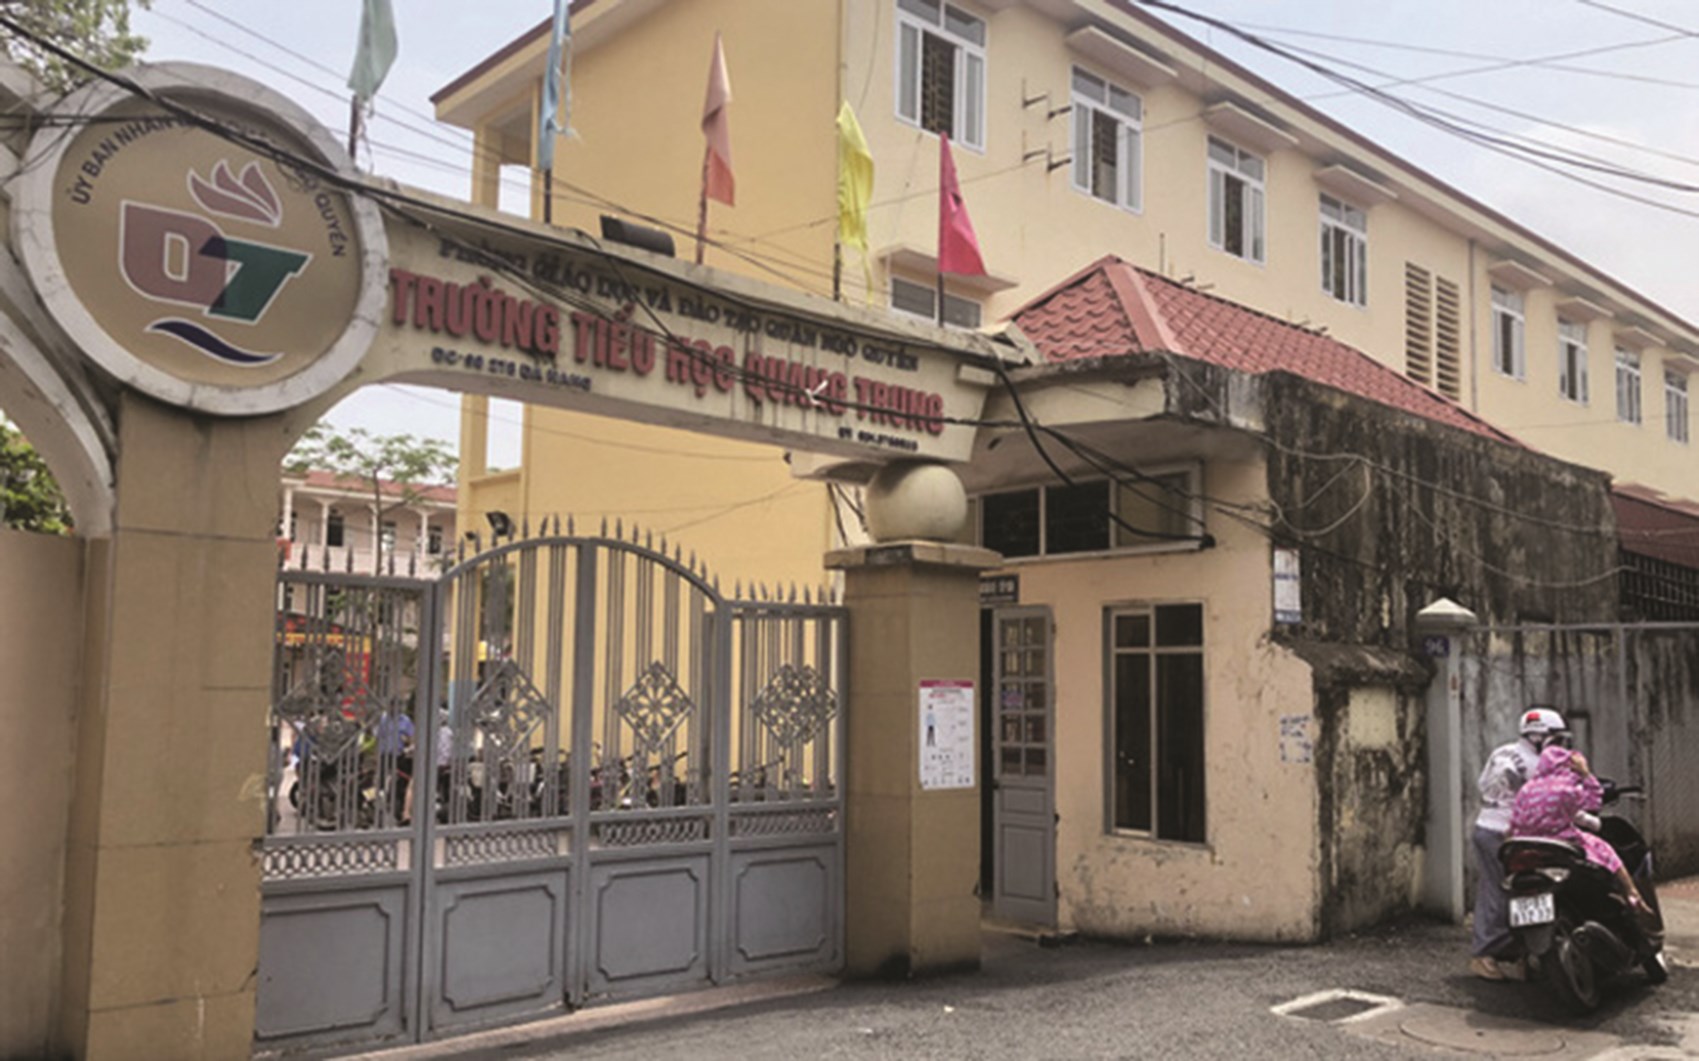 Trường Tiểu học Quang Trung, nơi xảy ra vụ việc